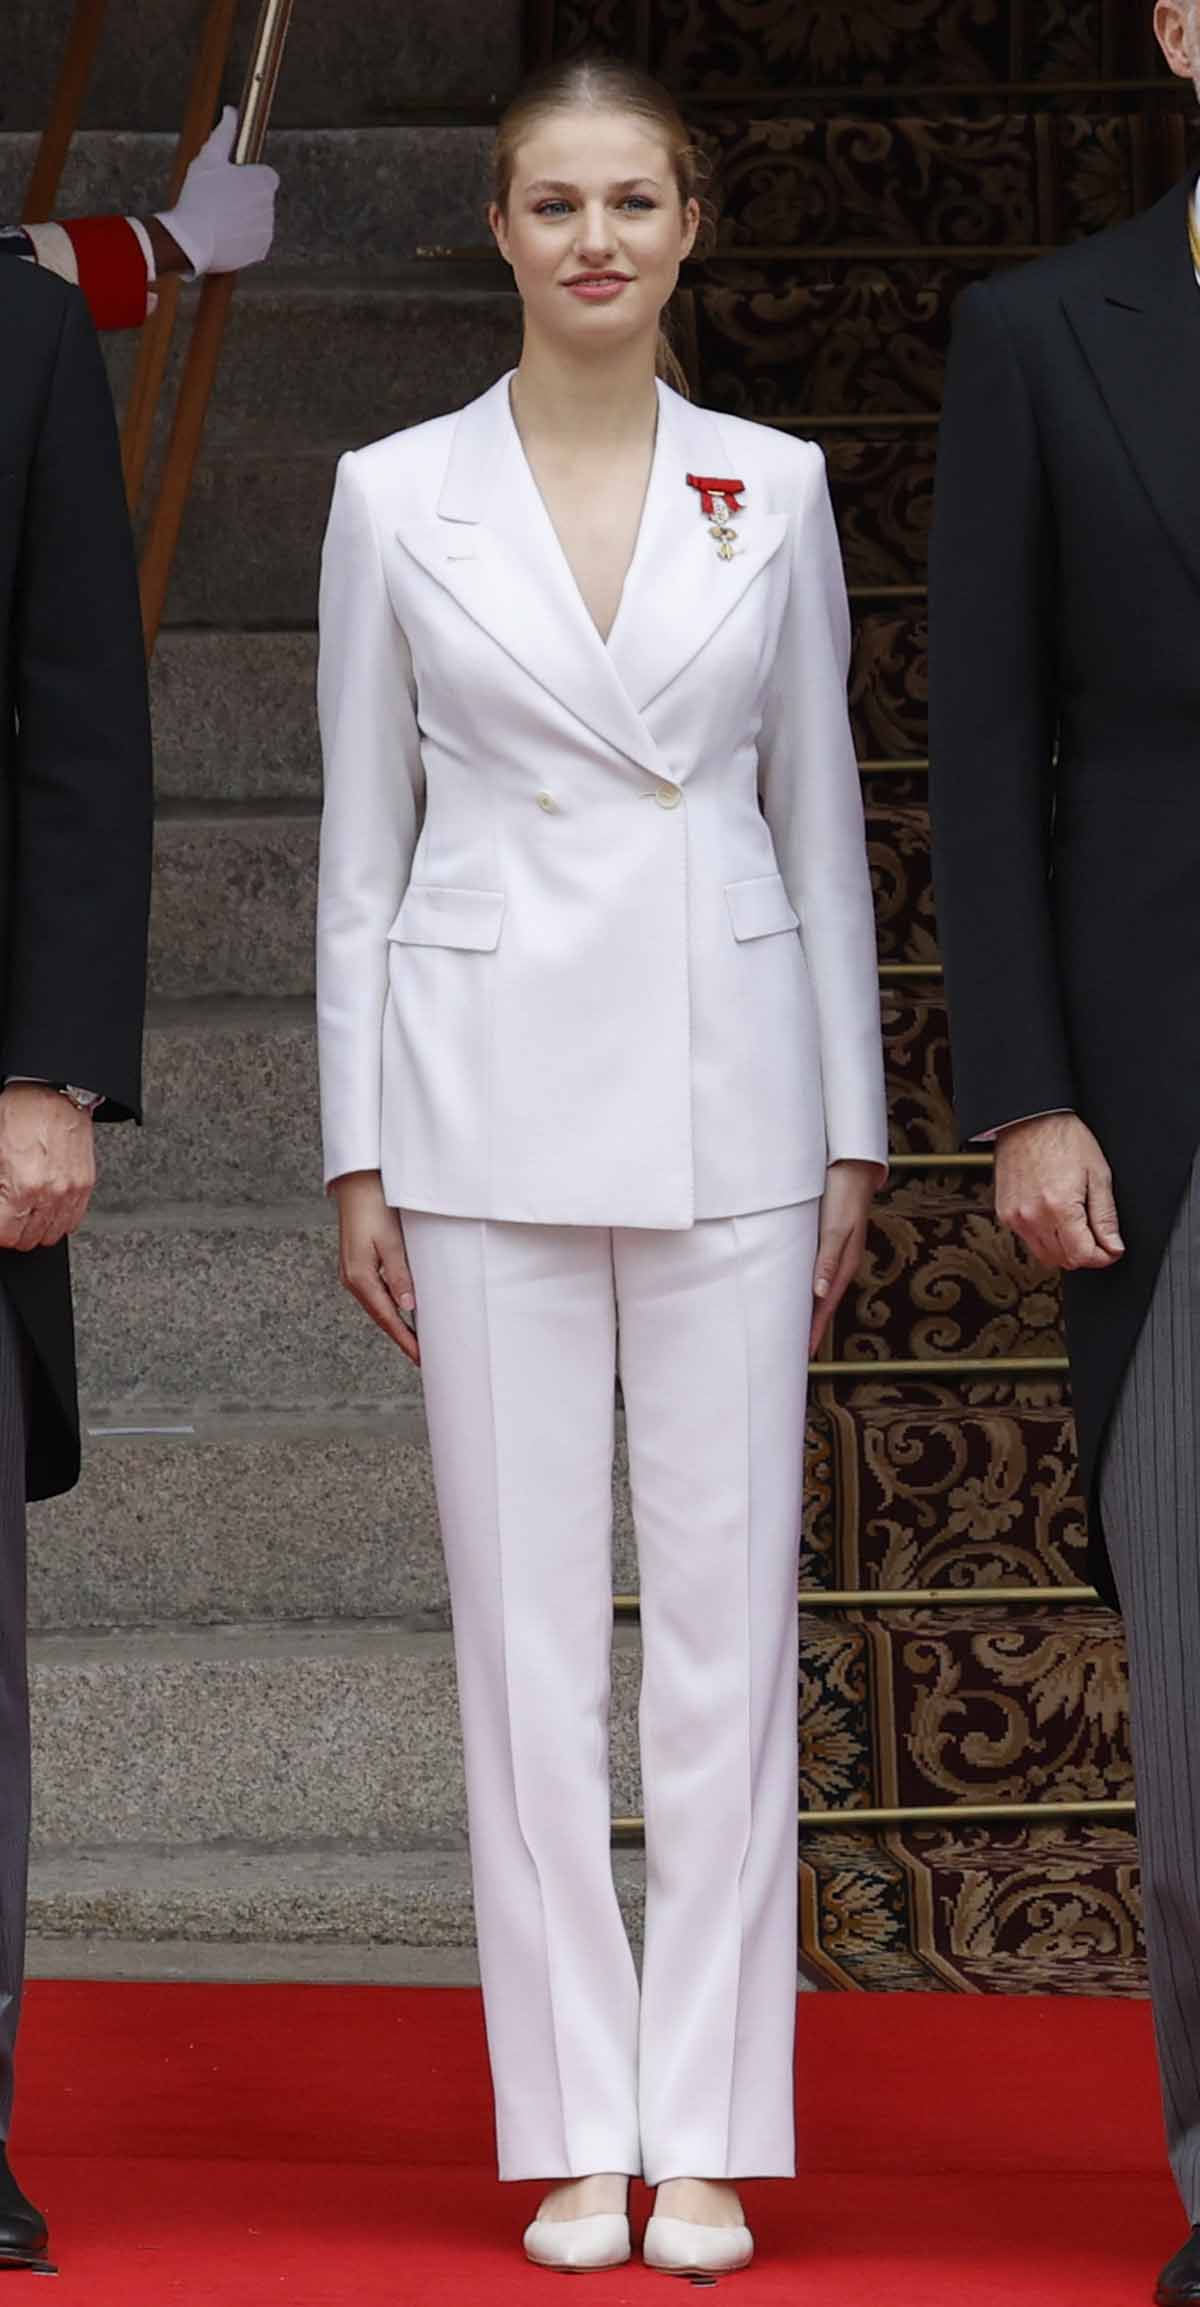 La Princesa Leonor con traje sastre blanco durante su Jura de la Constitución